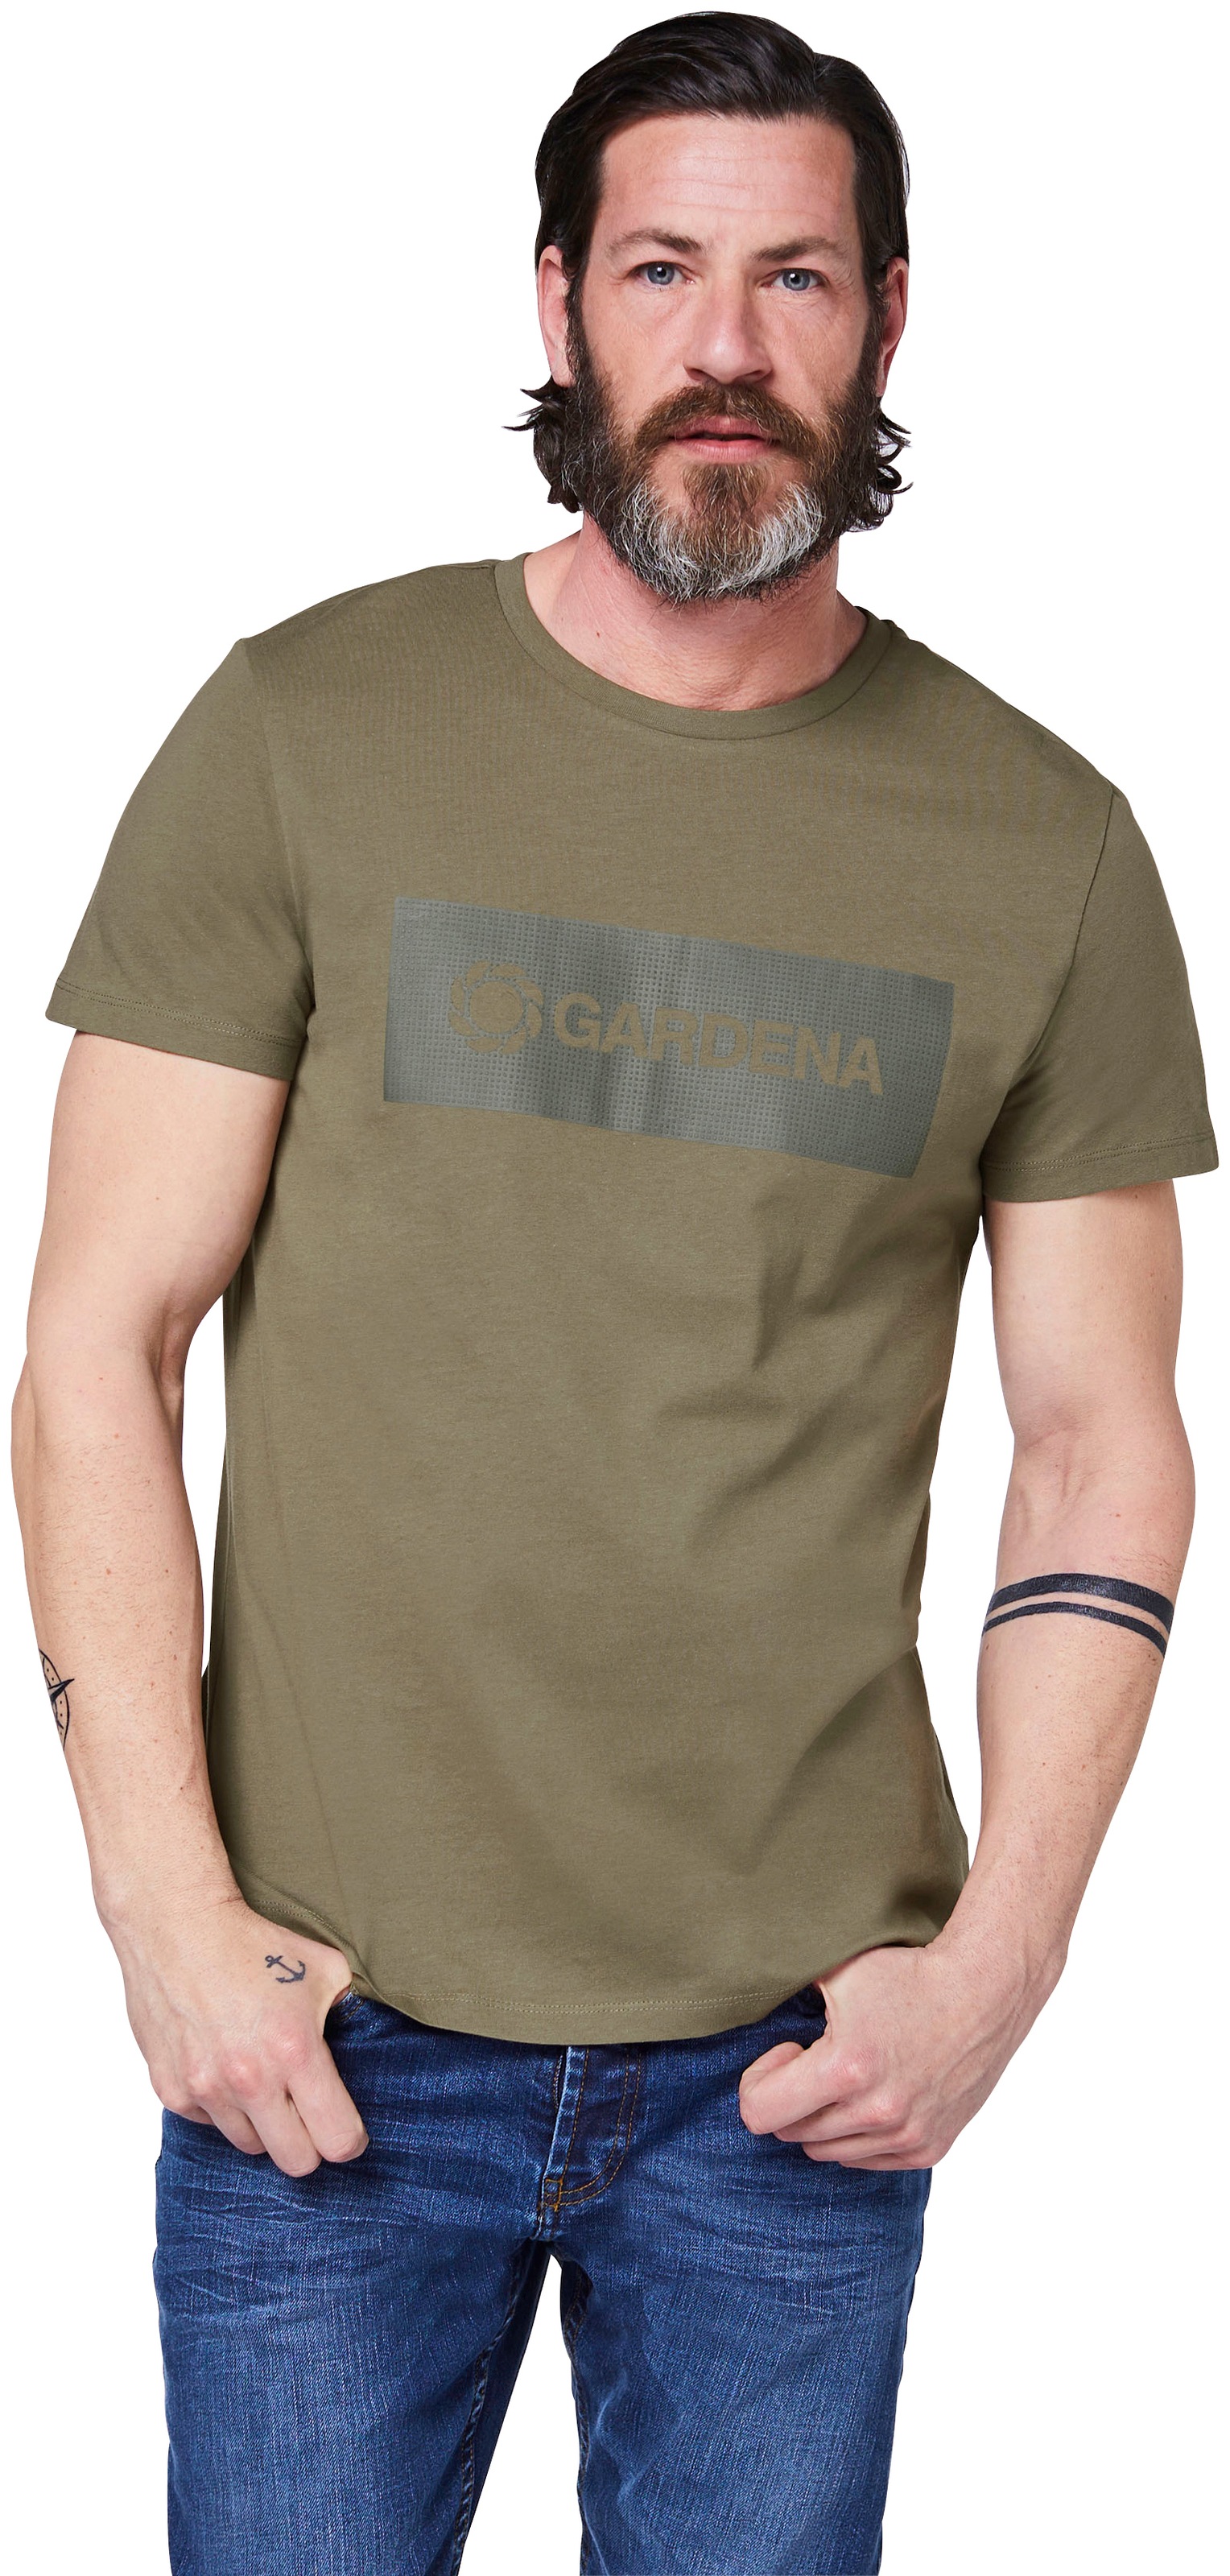 GARDENA T-Shirt »Dusty Olive«, mit Gardena-Logodruck ▷ kaufen | BAUR | Weite Hosen